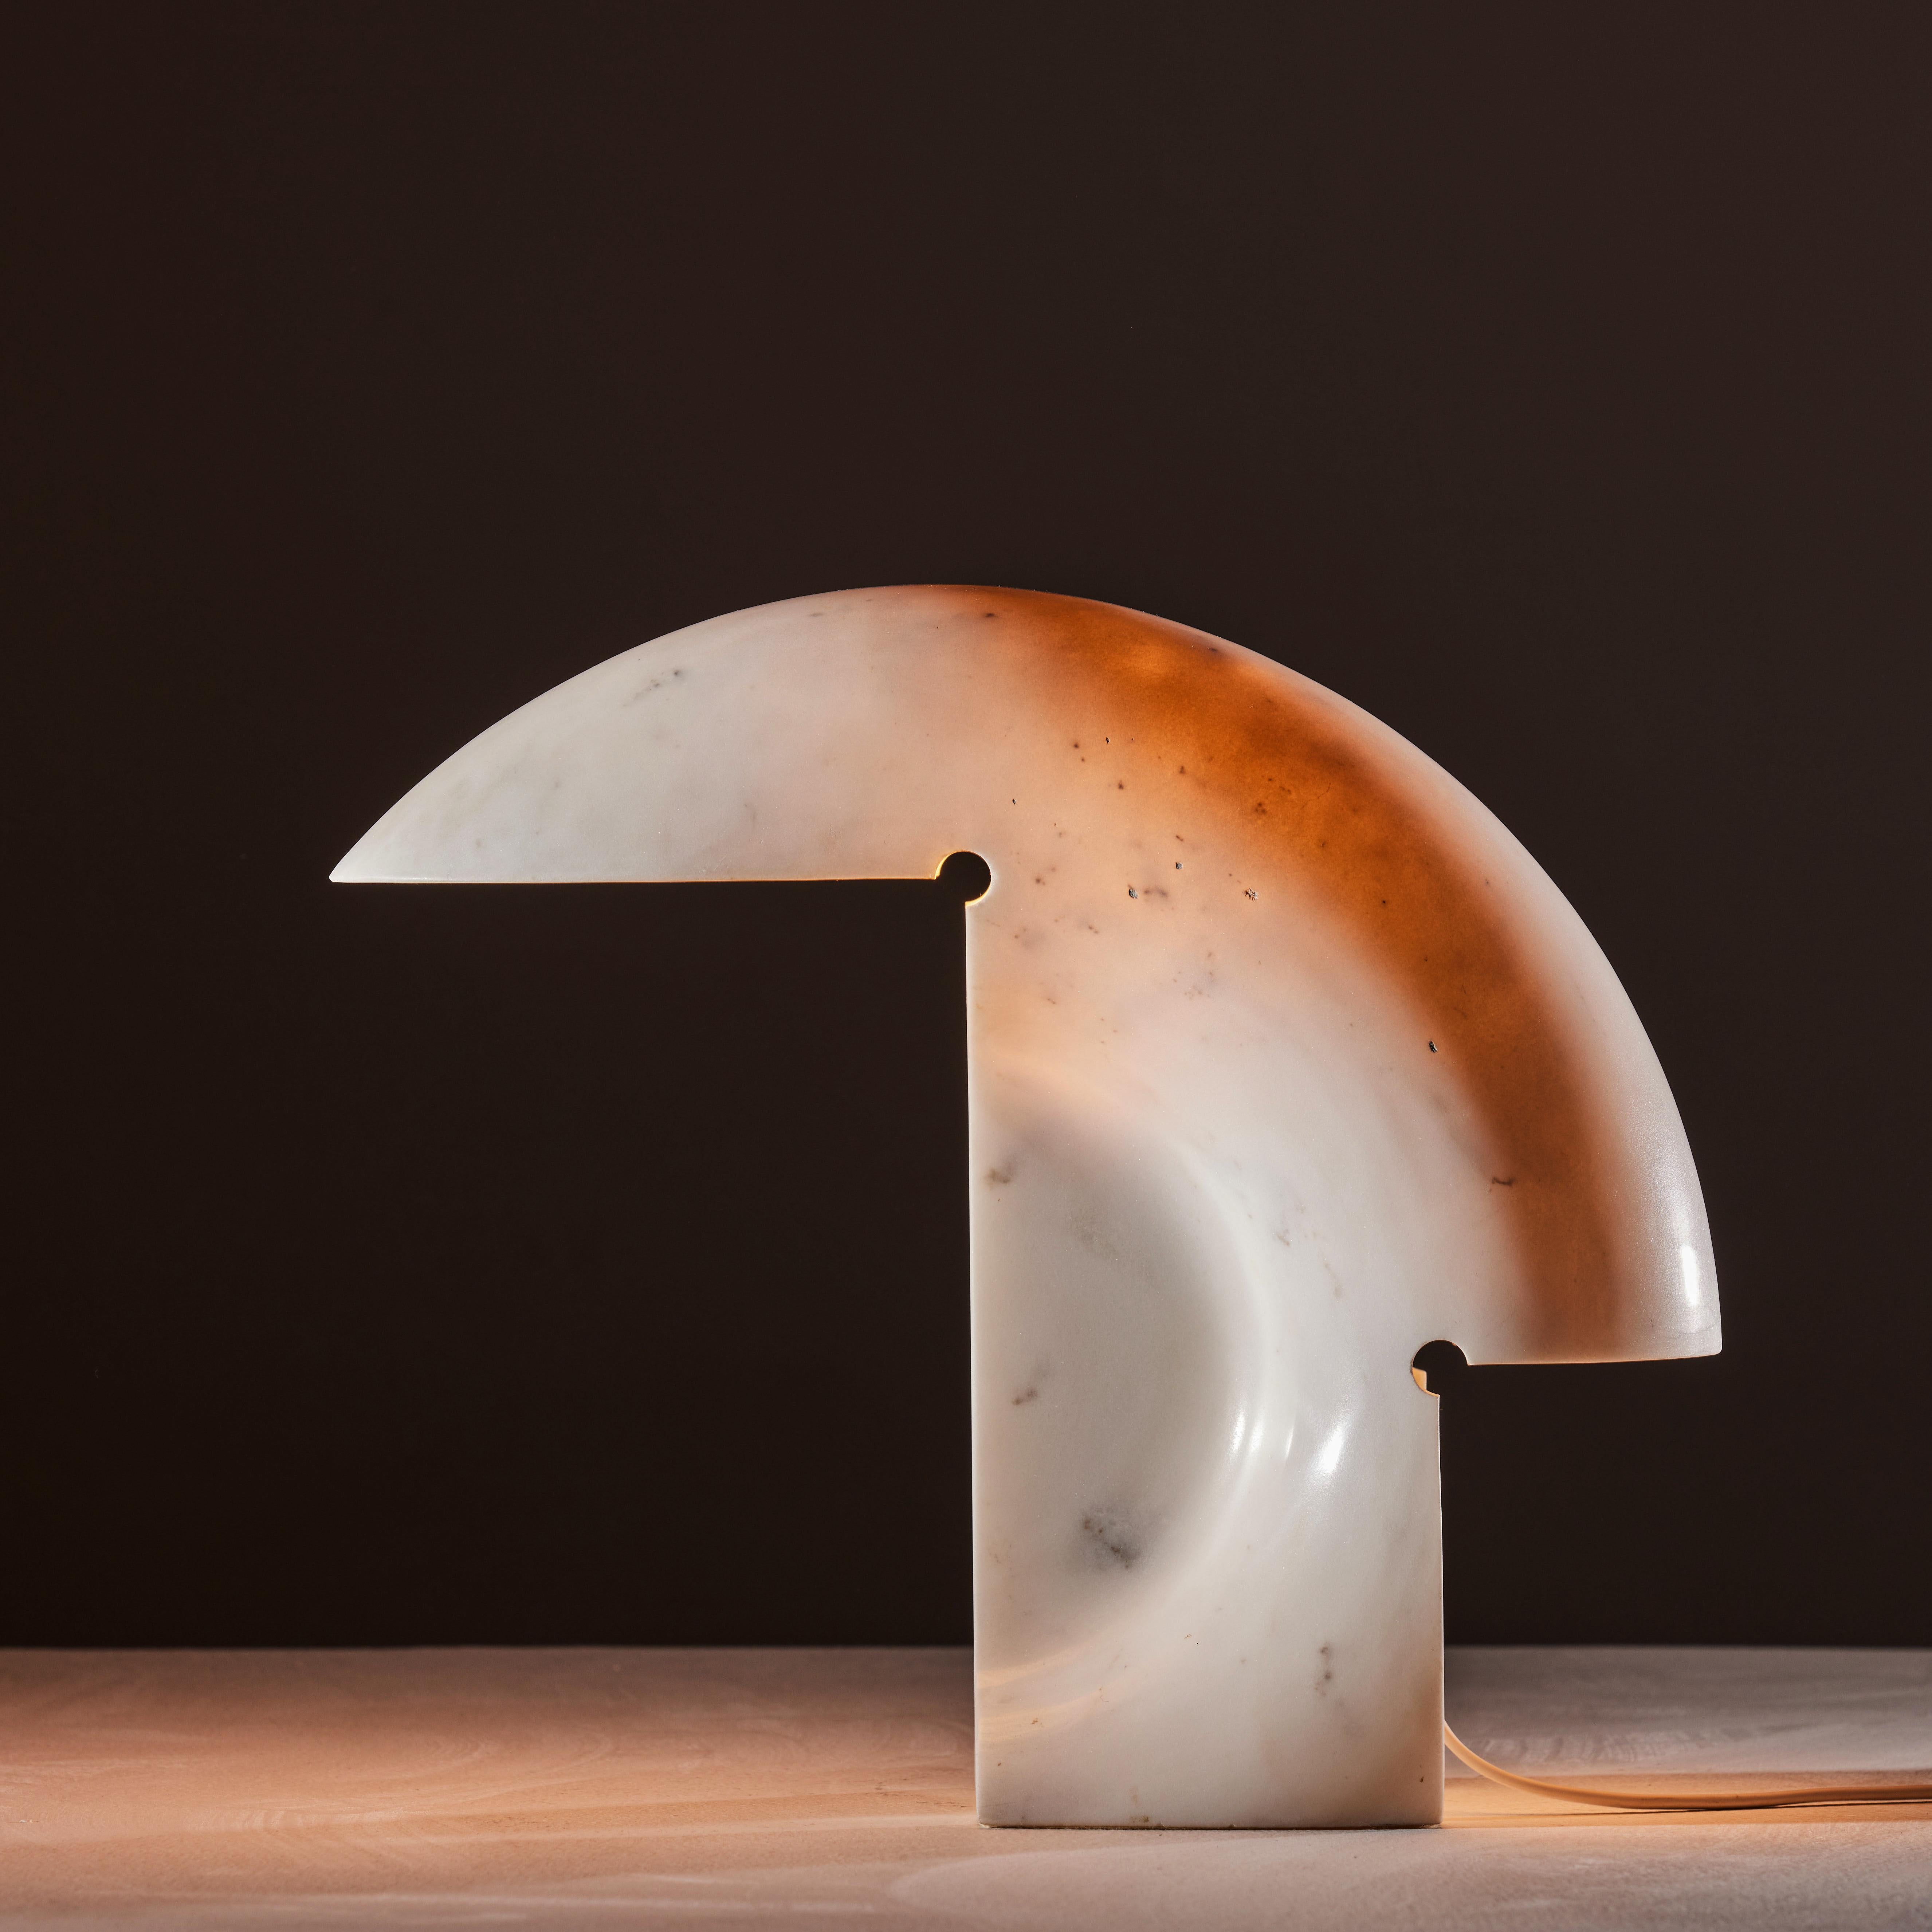 Tischleuchte Biagio von Tobia Scarpa. Entworfen und hergestellt in Italien, 1968. Aus einem einzigen Stück Carrara-Marmor geschnitzt. Original EU-Kordel. Wir empfehlen eine E27-Glühbirne mit maximal 100 W. Glühbirne nicht enthalten.